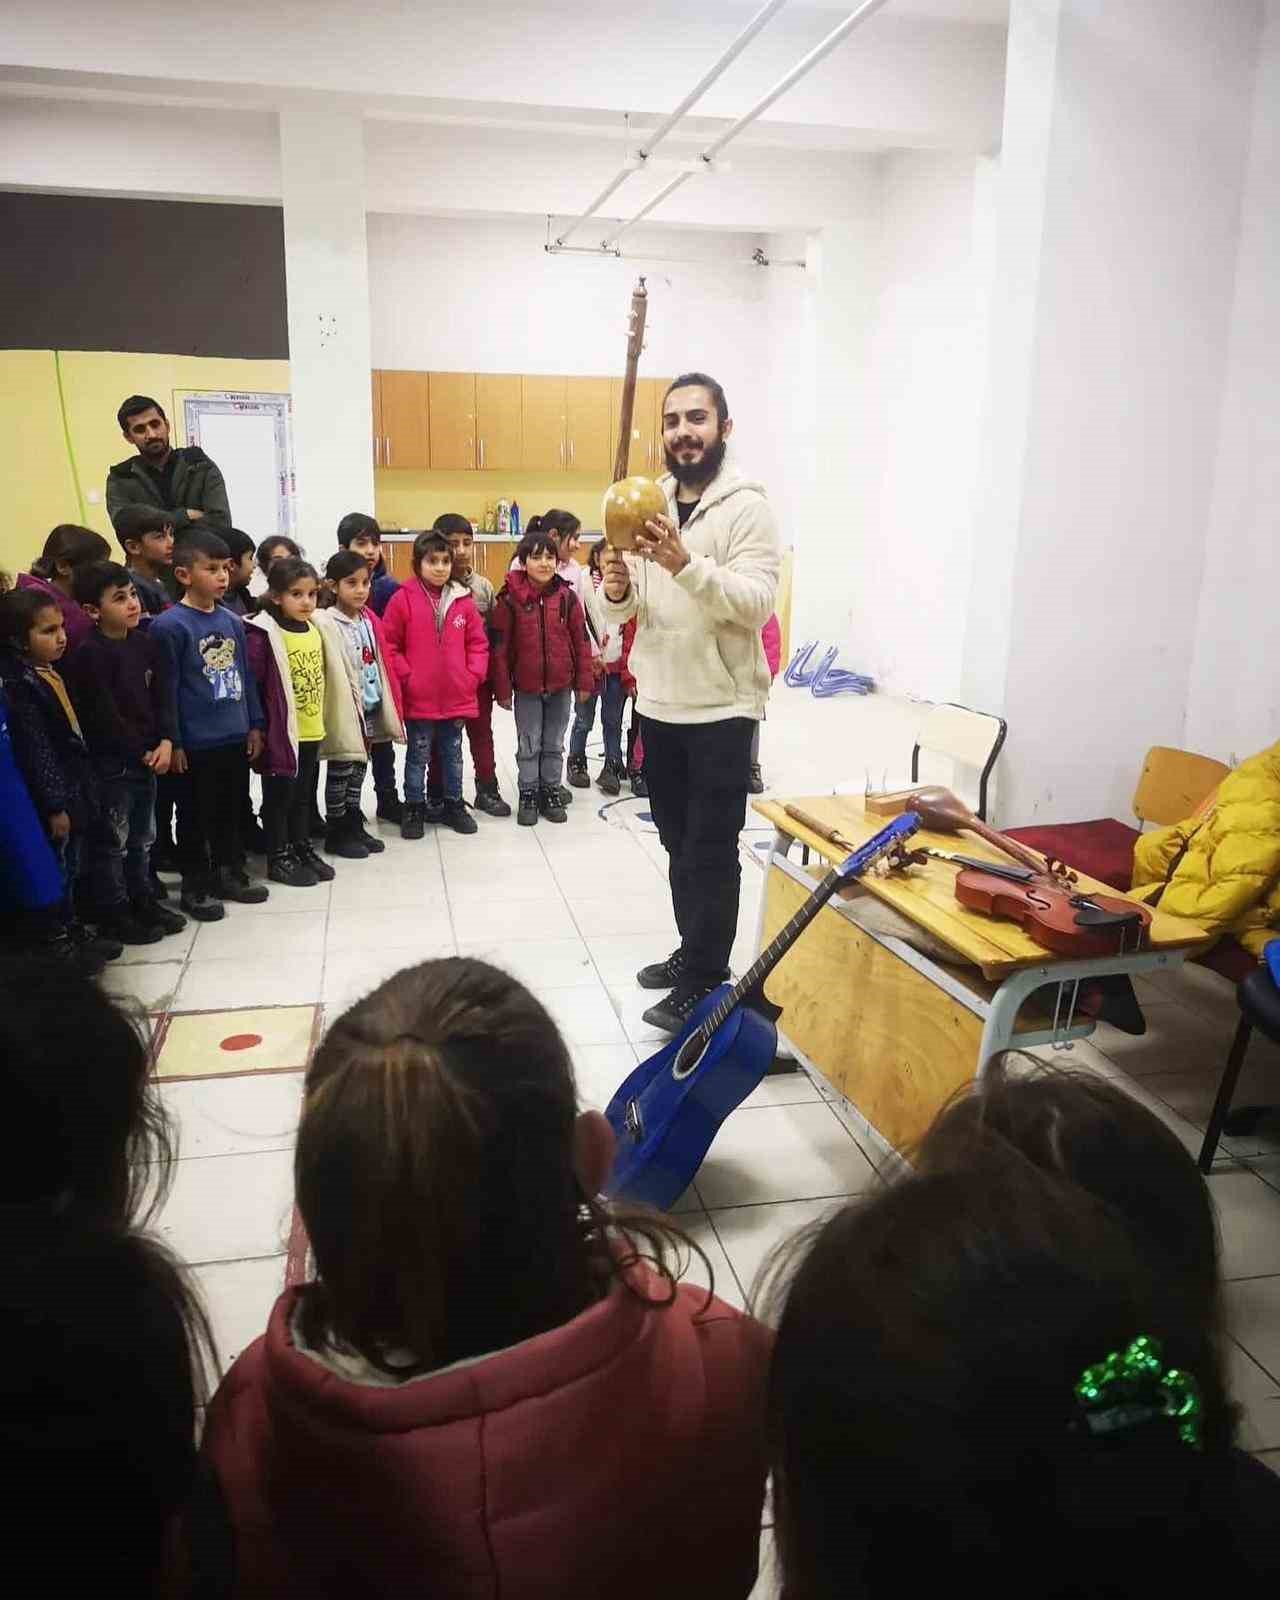 Müzik öğretmeni, köy çocuklarını müzikle buluşturuyor
